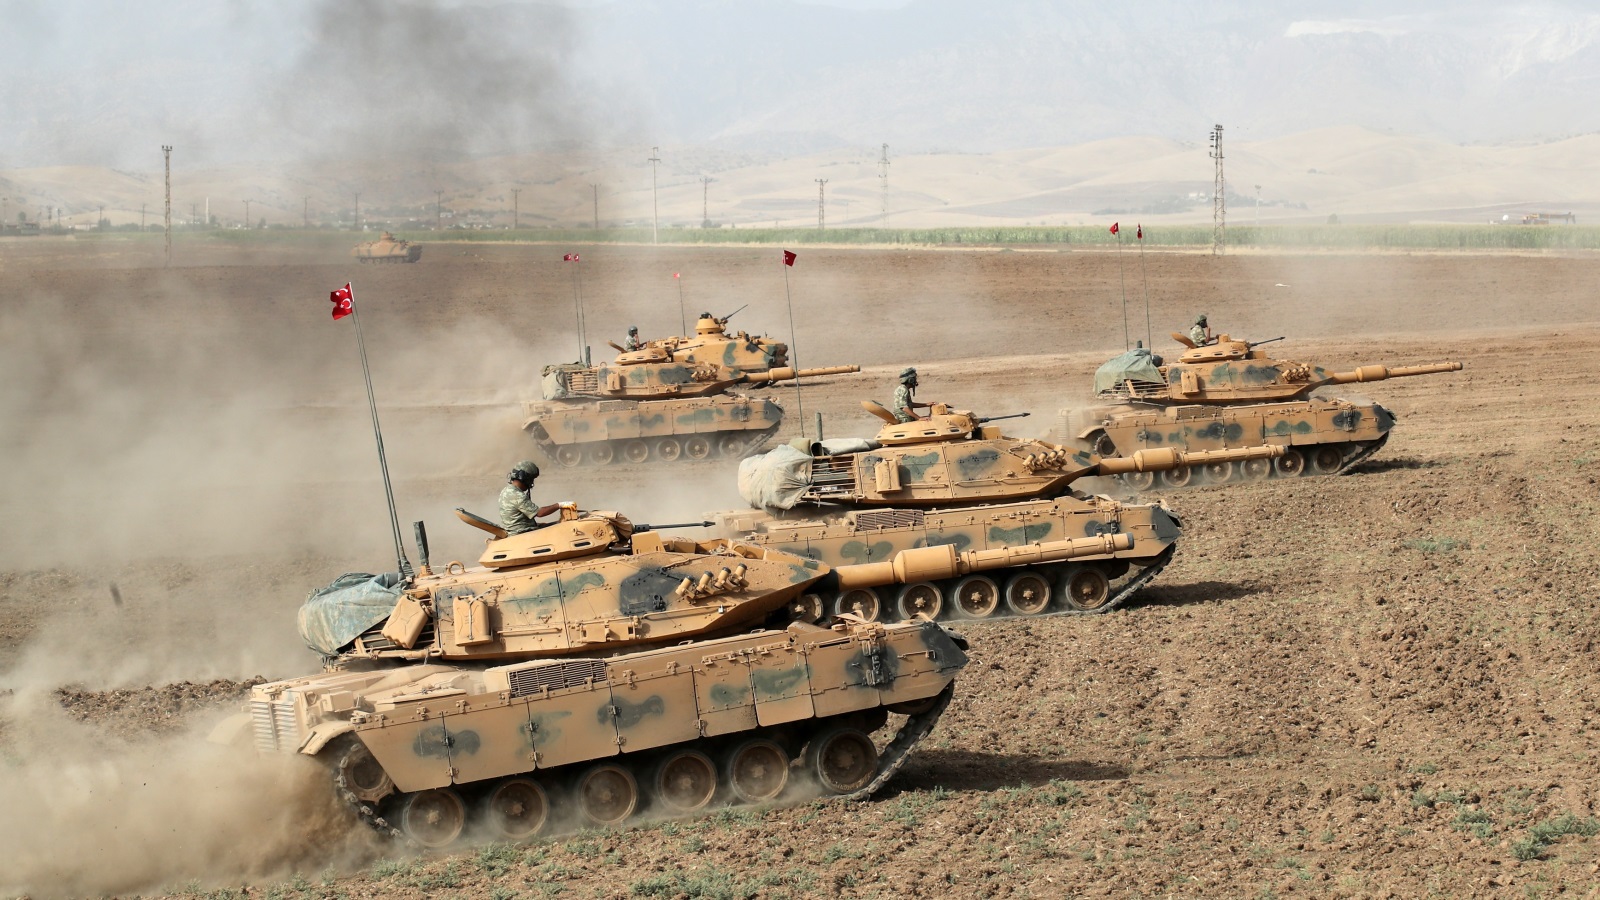 ‪القوات السعودية والعربية المفترضة في سوريا قد تصطدم بالقوات التركية في سوريا‬  القوات السعودية والعربية المفترضة في سوريا قد تصطدم بالقوات التركية في سوريا (رويترز)